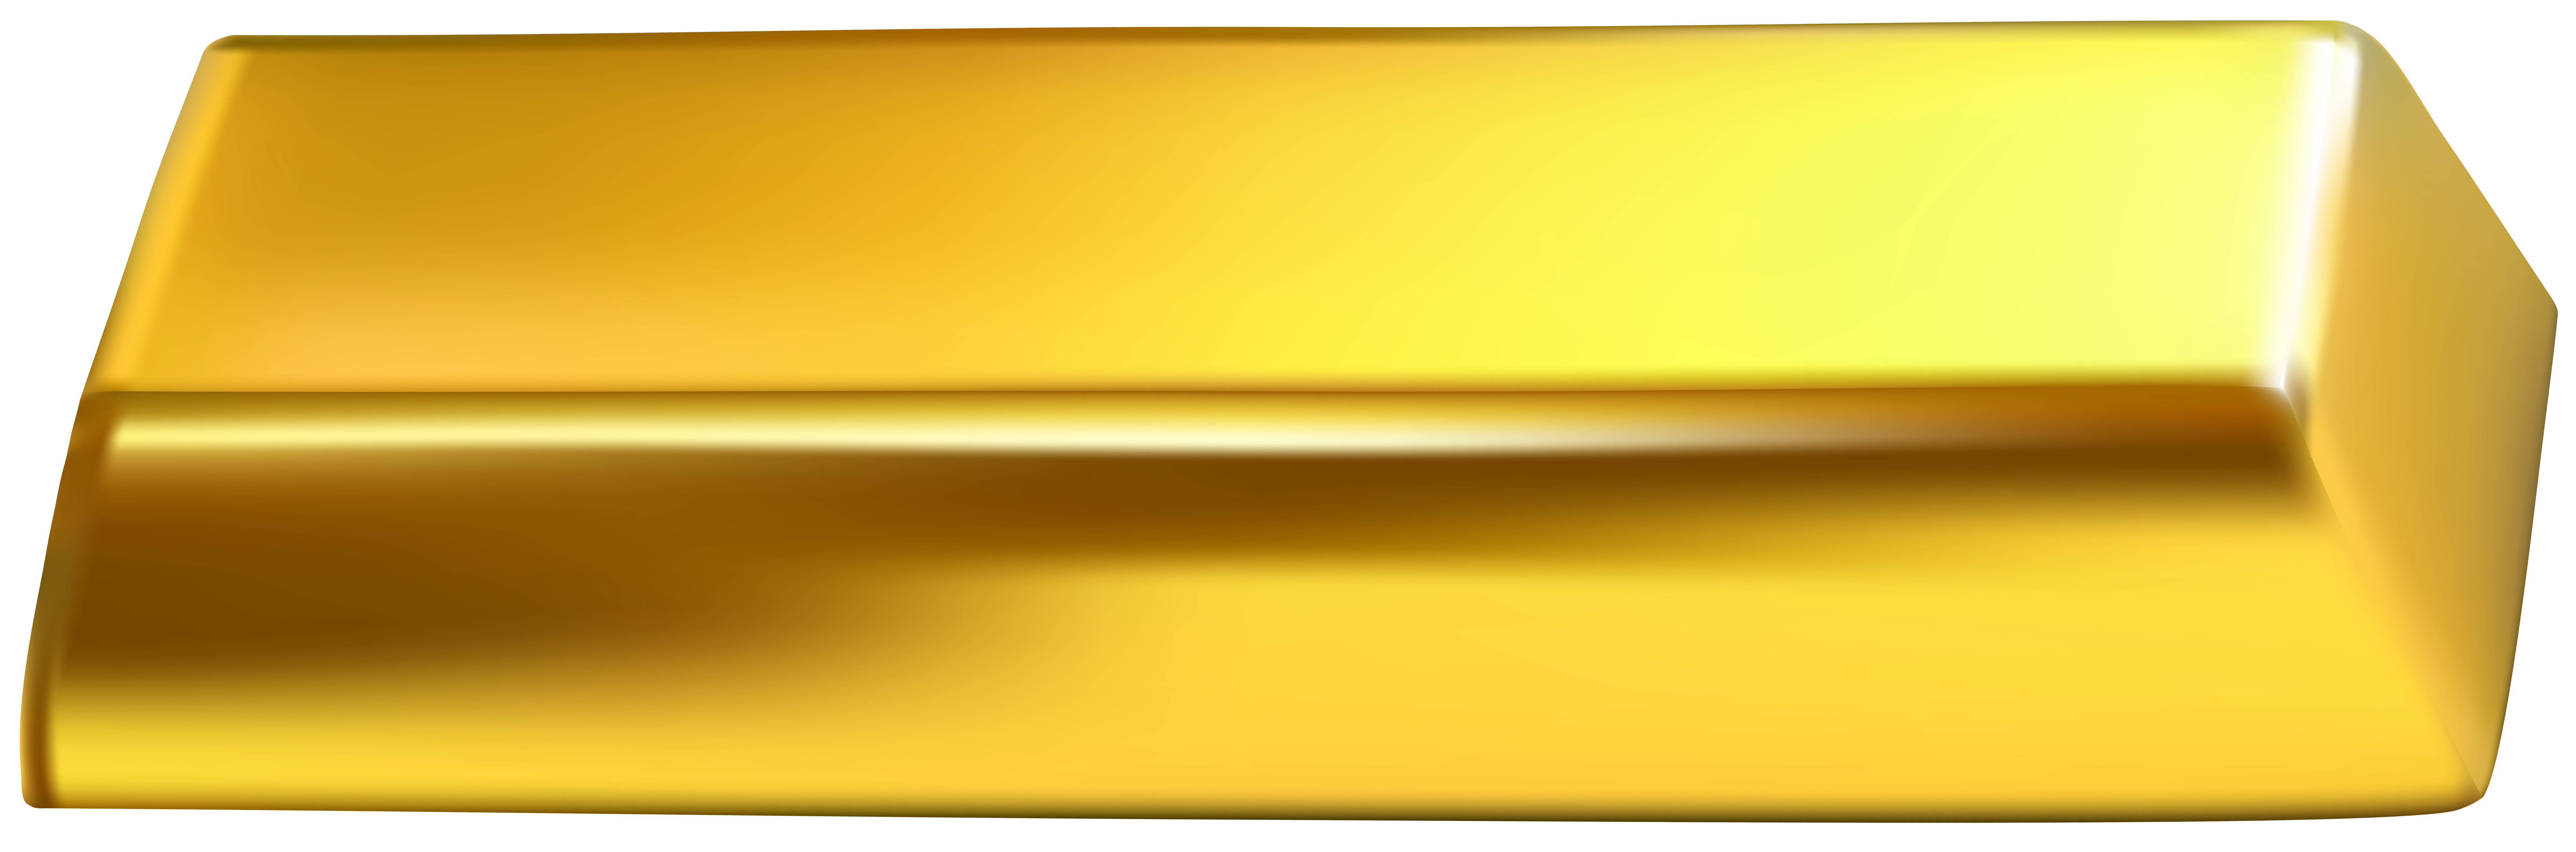 gold bar clip art